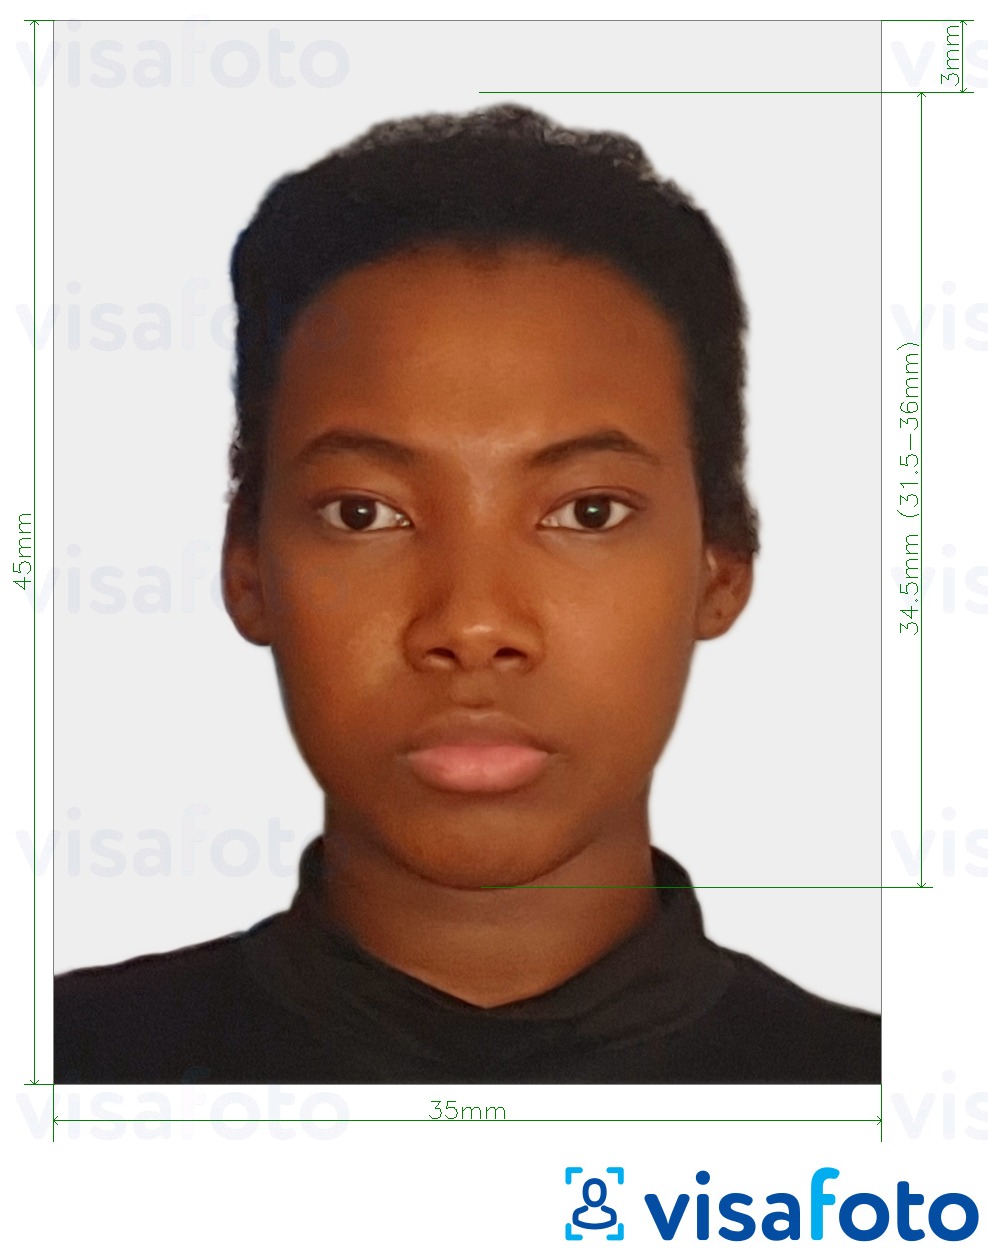 نمونه ی یک عکس برای گذرنامه پاپوآ گینه نو 35x45mm (3.5x4.5 سانتی متر) با مشخصات دقیق